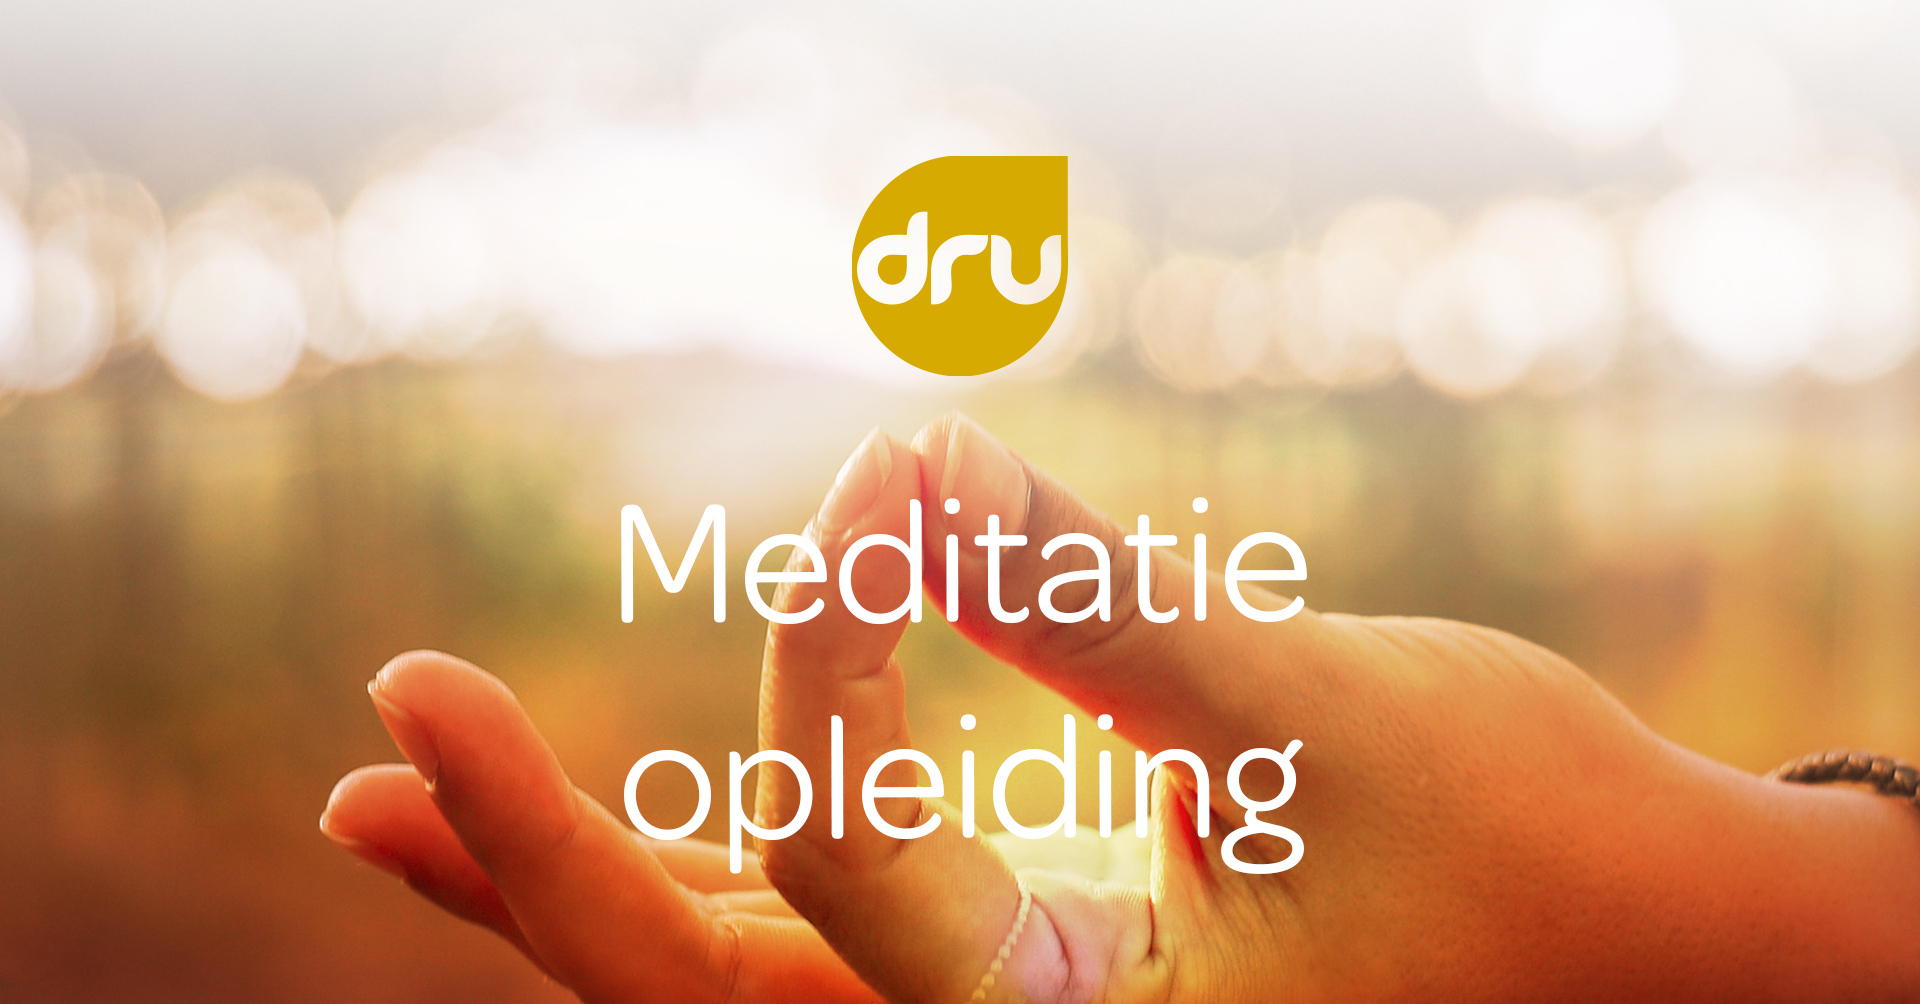 MeditatieopleidingAdvert-v2.jpg